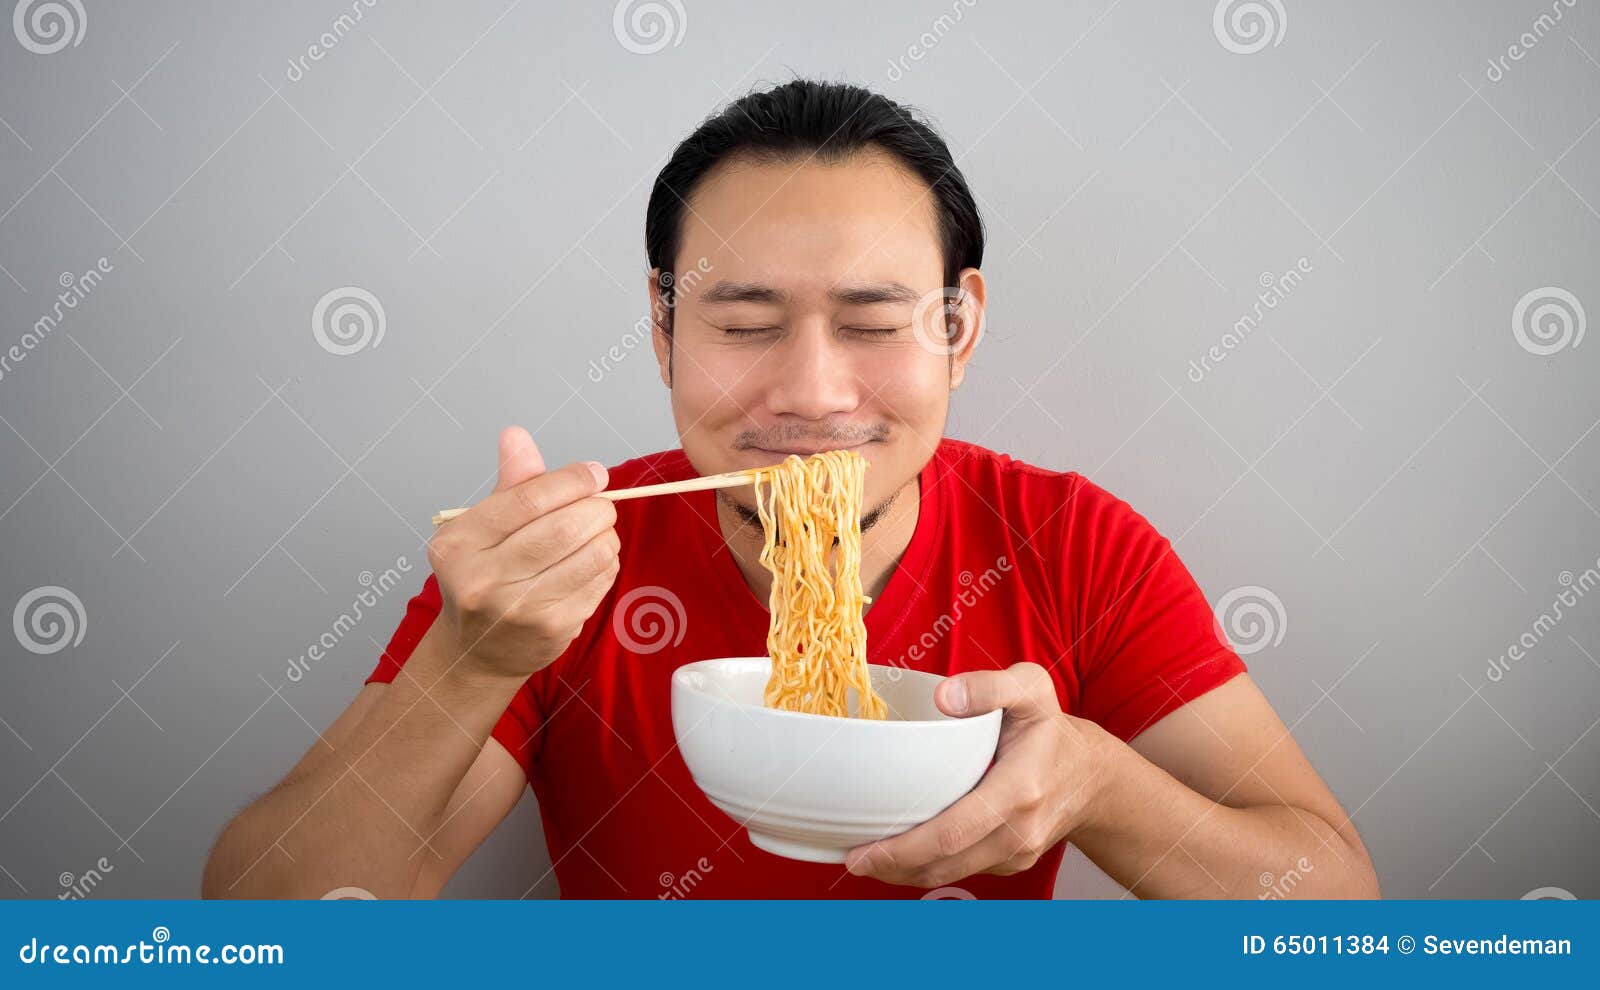 man eating instant noodles.